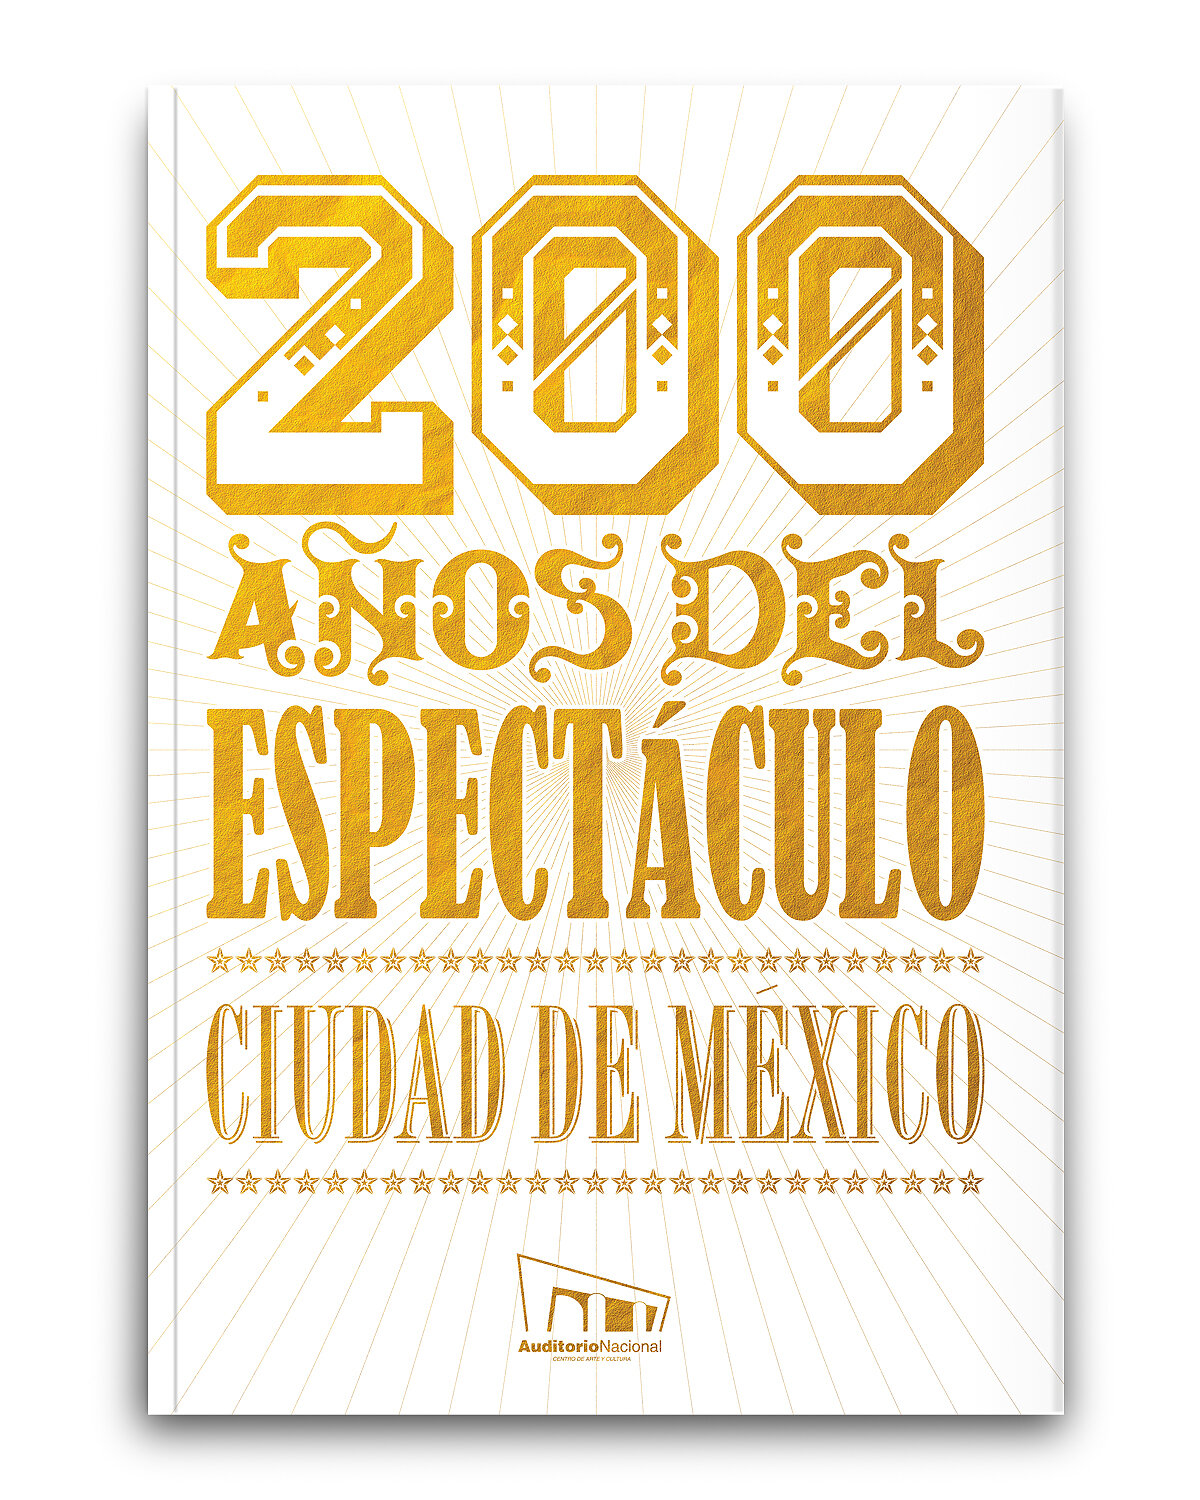 200 años del espectáculo. Ciudad de México